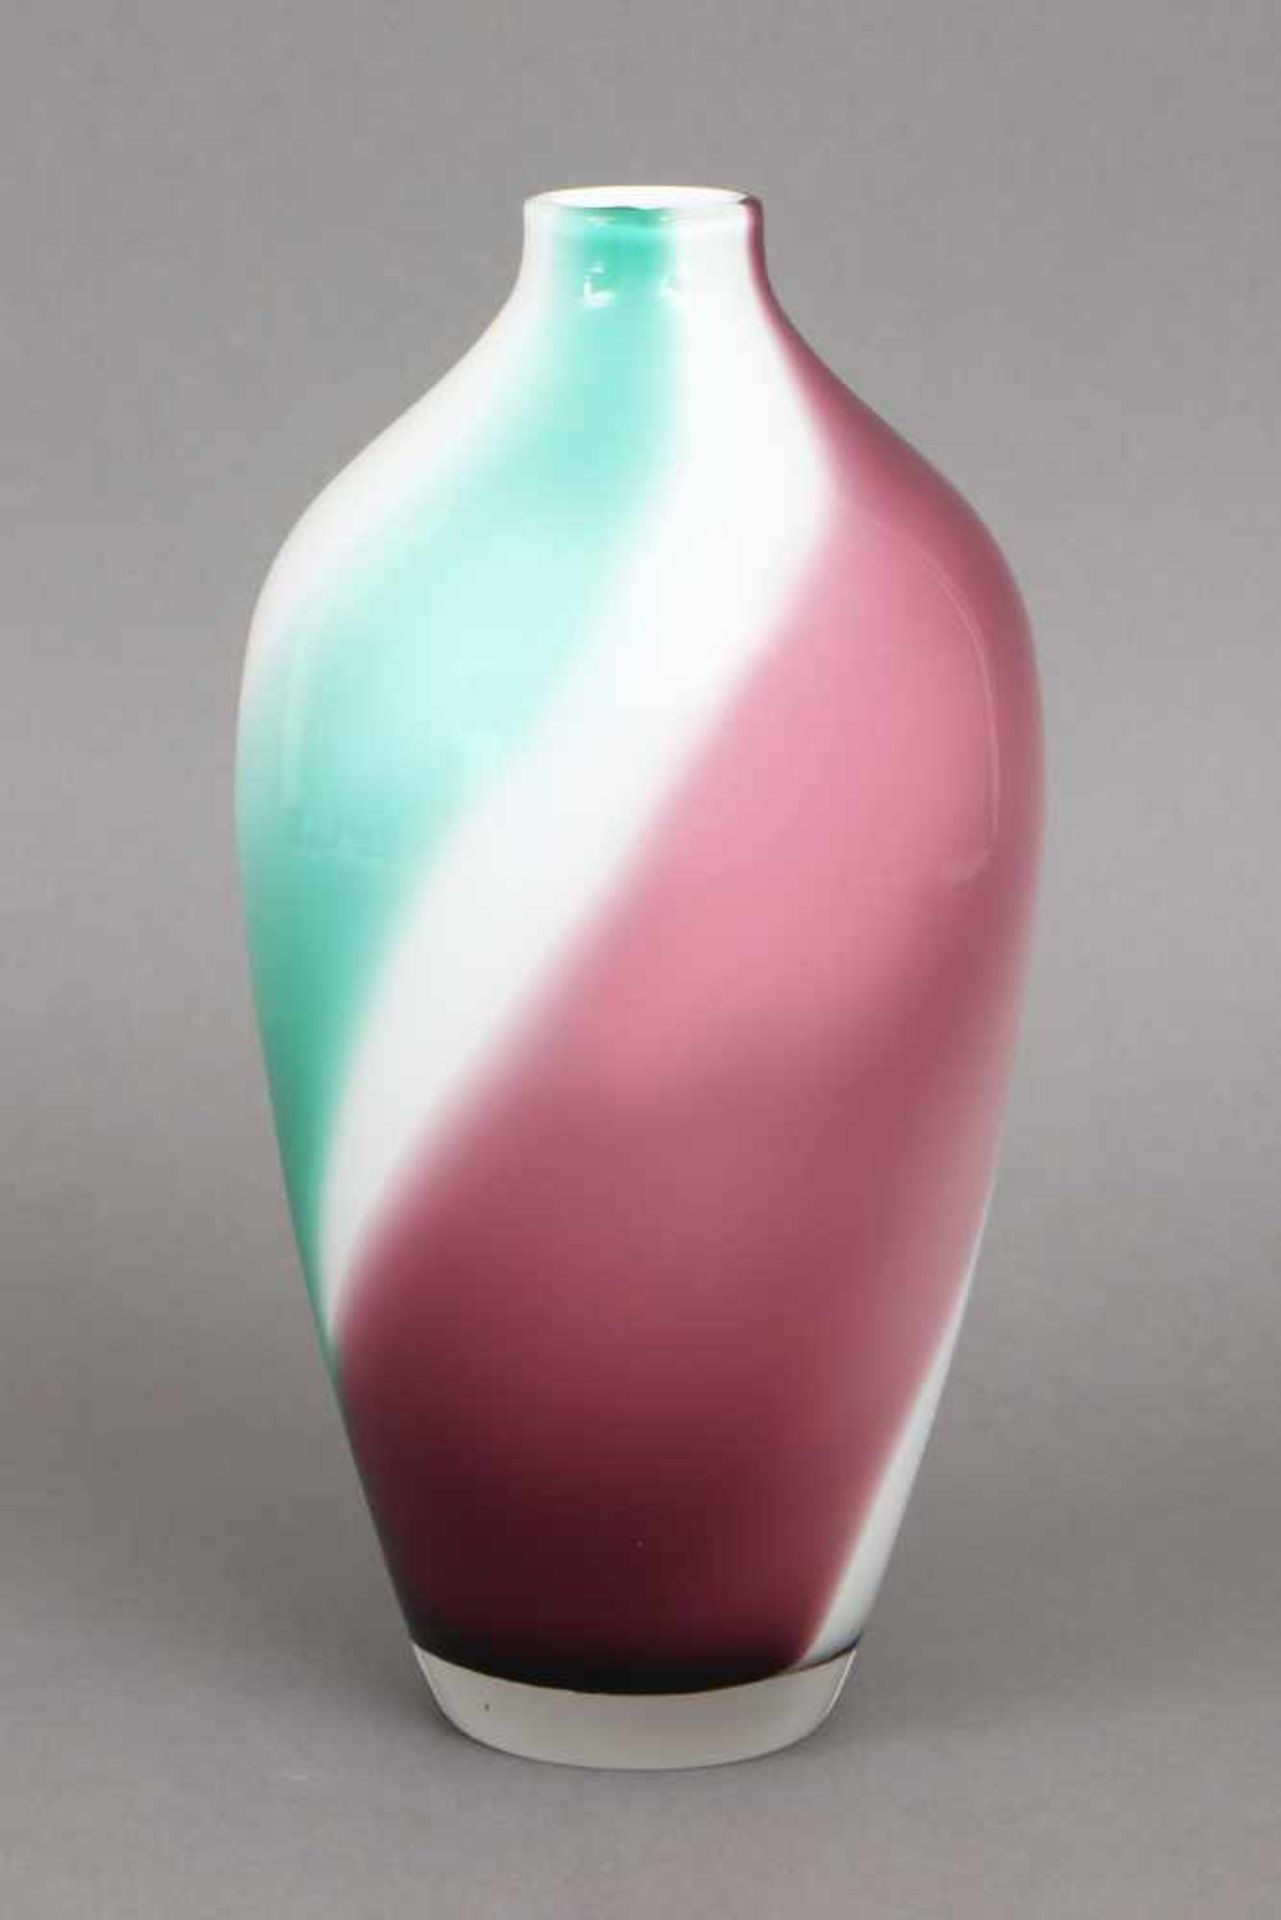 Glasvase in Meiping-Formweiß, grün und violett überfangenes Glas, ovoide Form, unbekannter